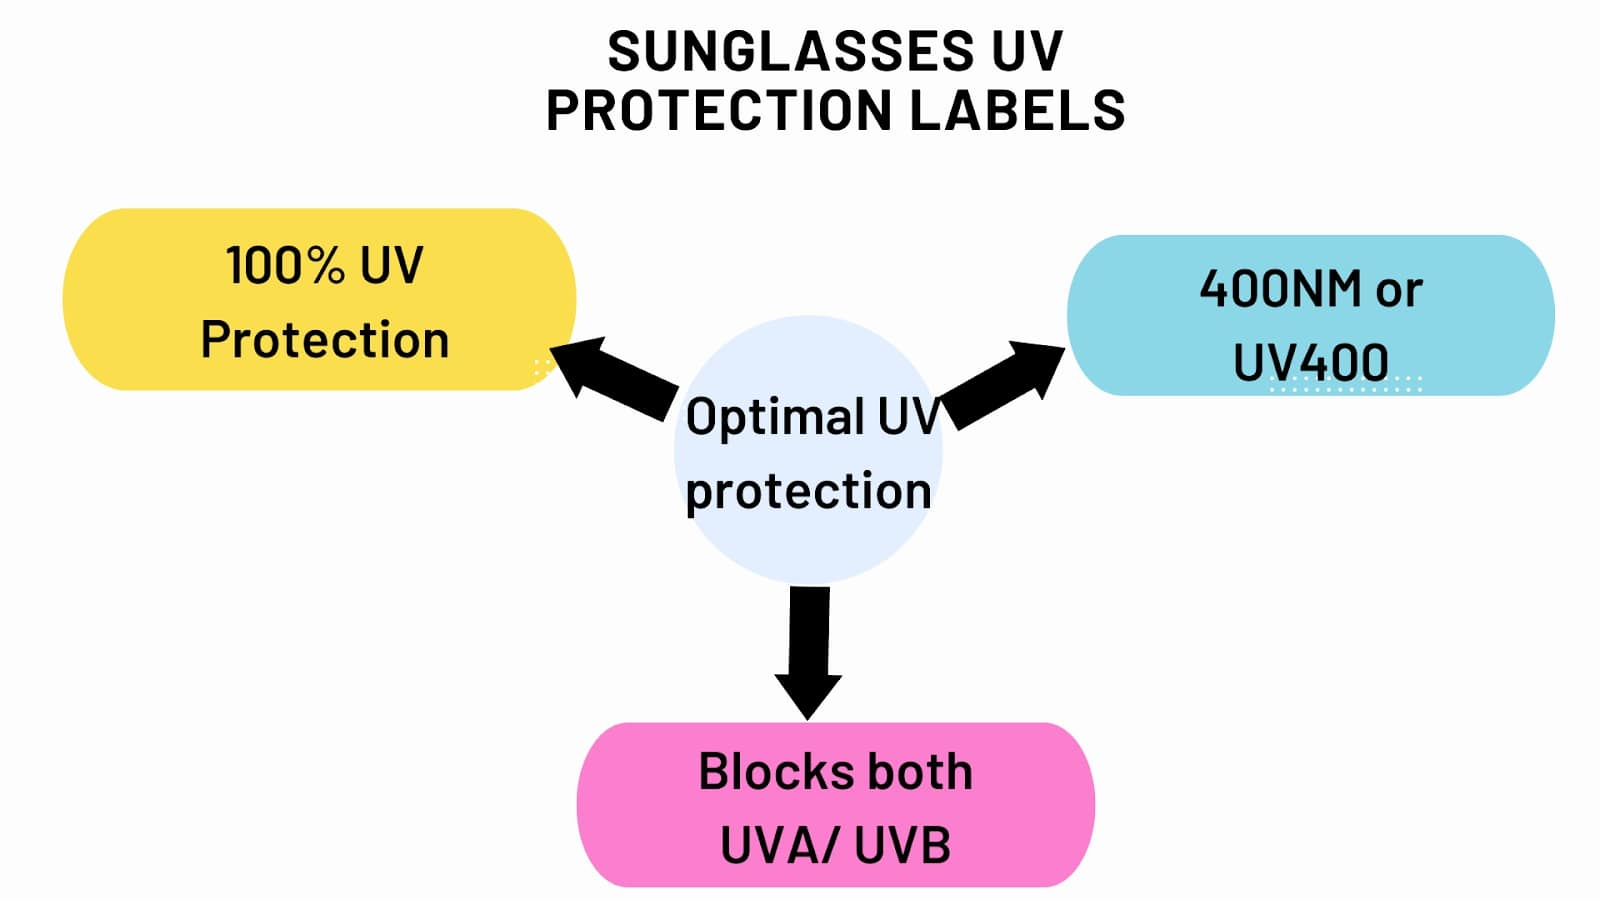 Étiquettes de protection UV pour lunettes de soleil, protection 100 % UV, 400 NM ou UV400, bloque les UVA/UVB.